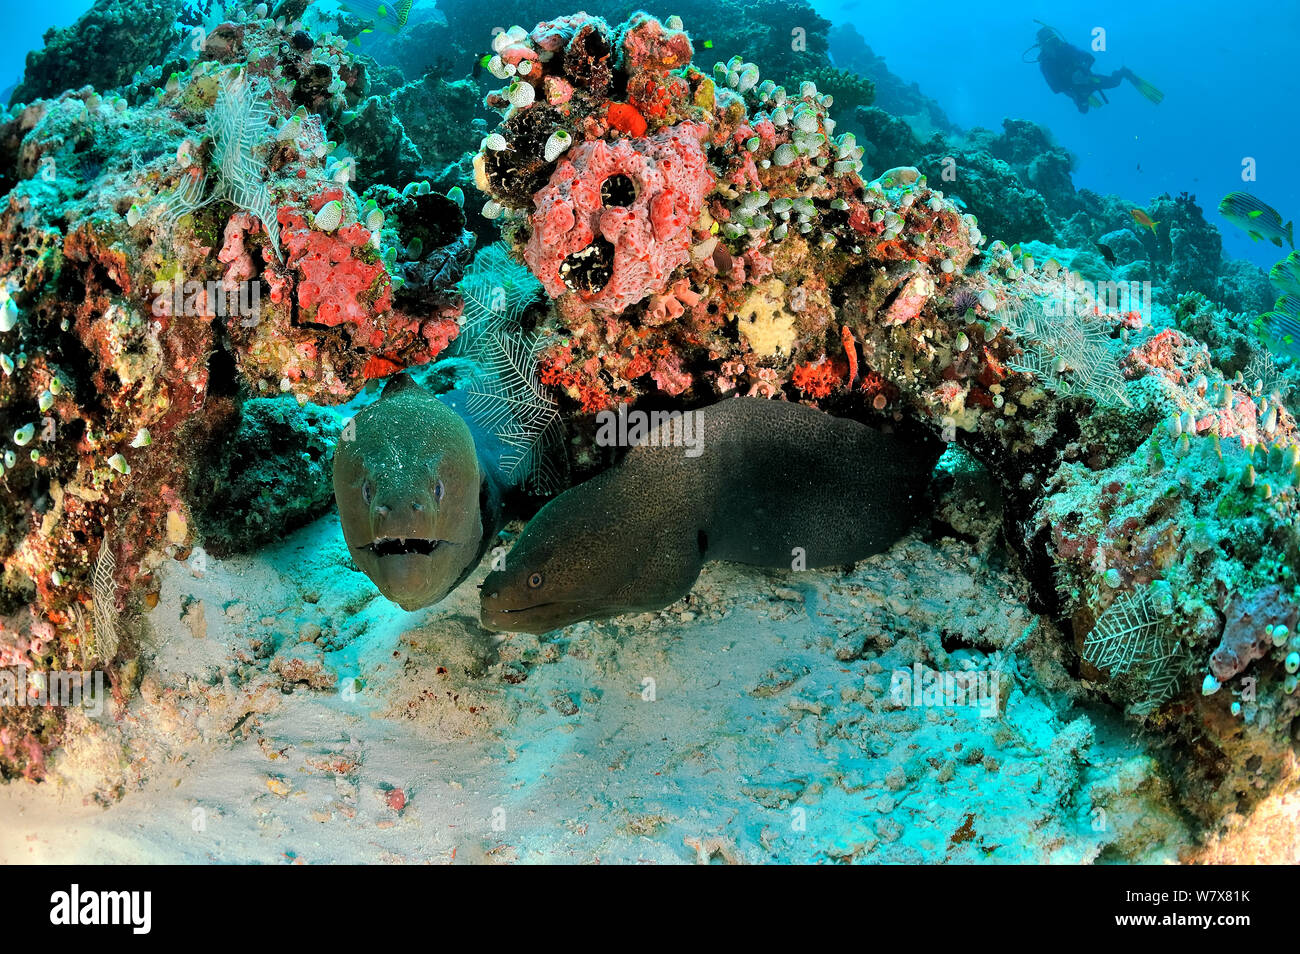 Due murene giganti (Gymnothorax javanicus) proveniente dal Loro burrows sulla barriera corallina, con sweetlips orientali (Plectorhinchus orientalis) sullo sfondo, Maldive. Oceano Indiano. Foto Stock